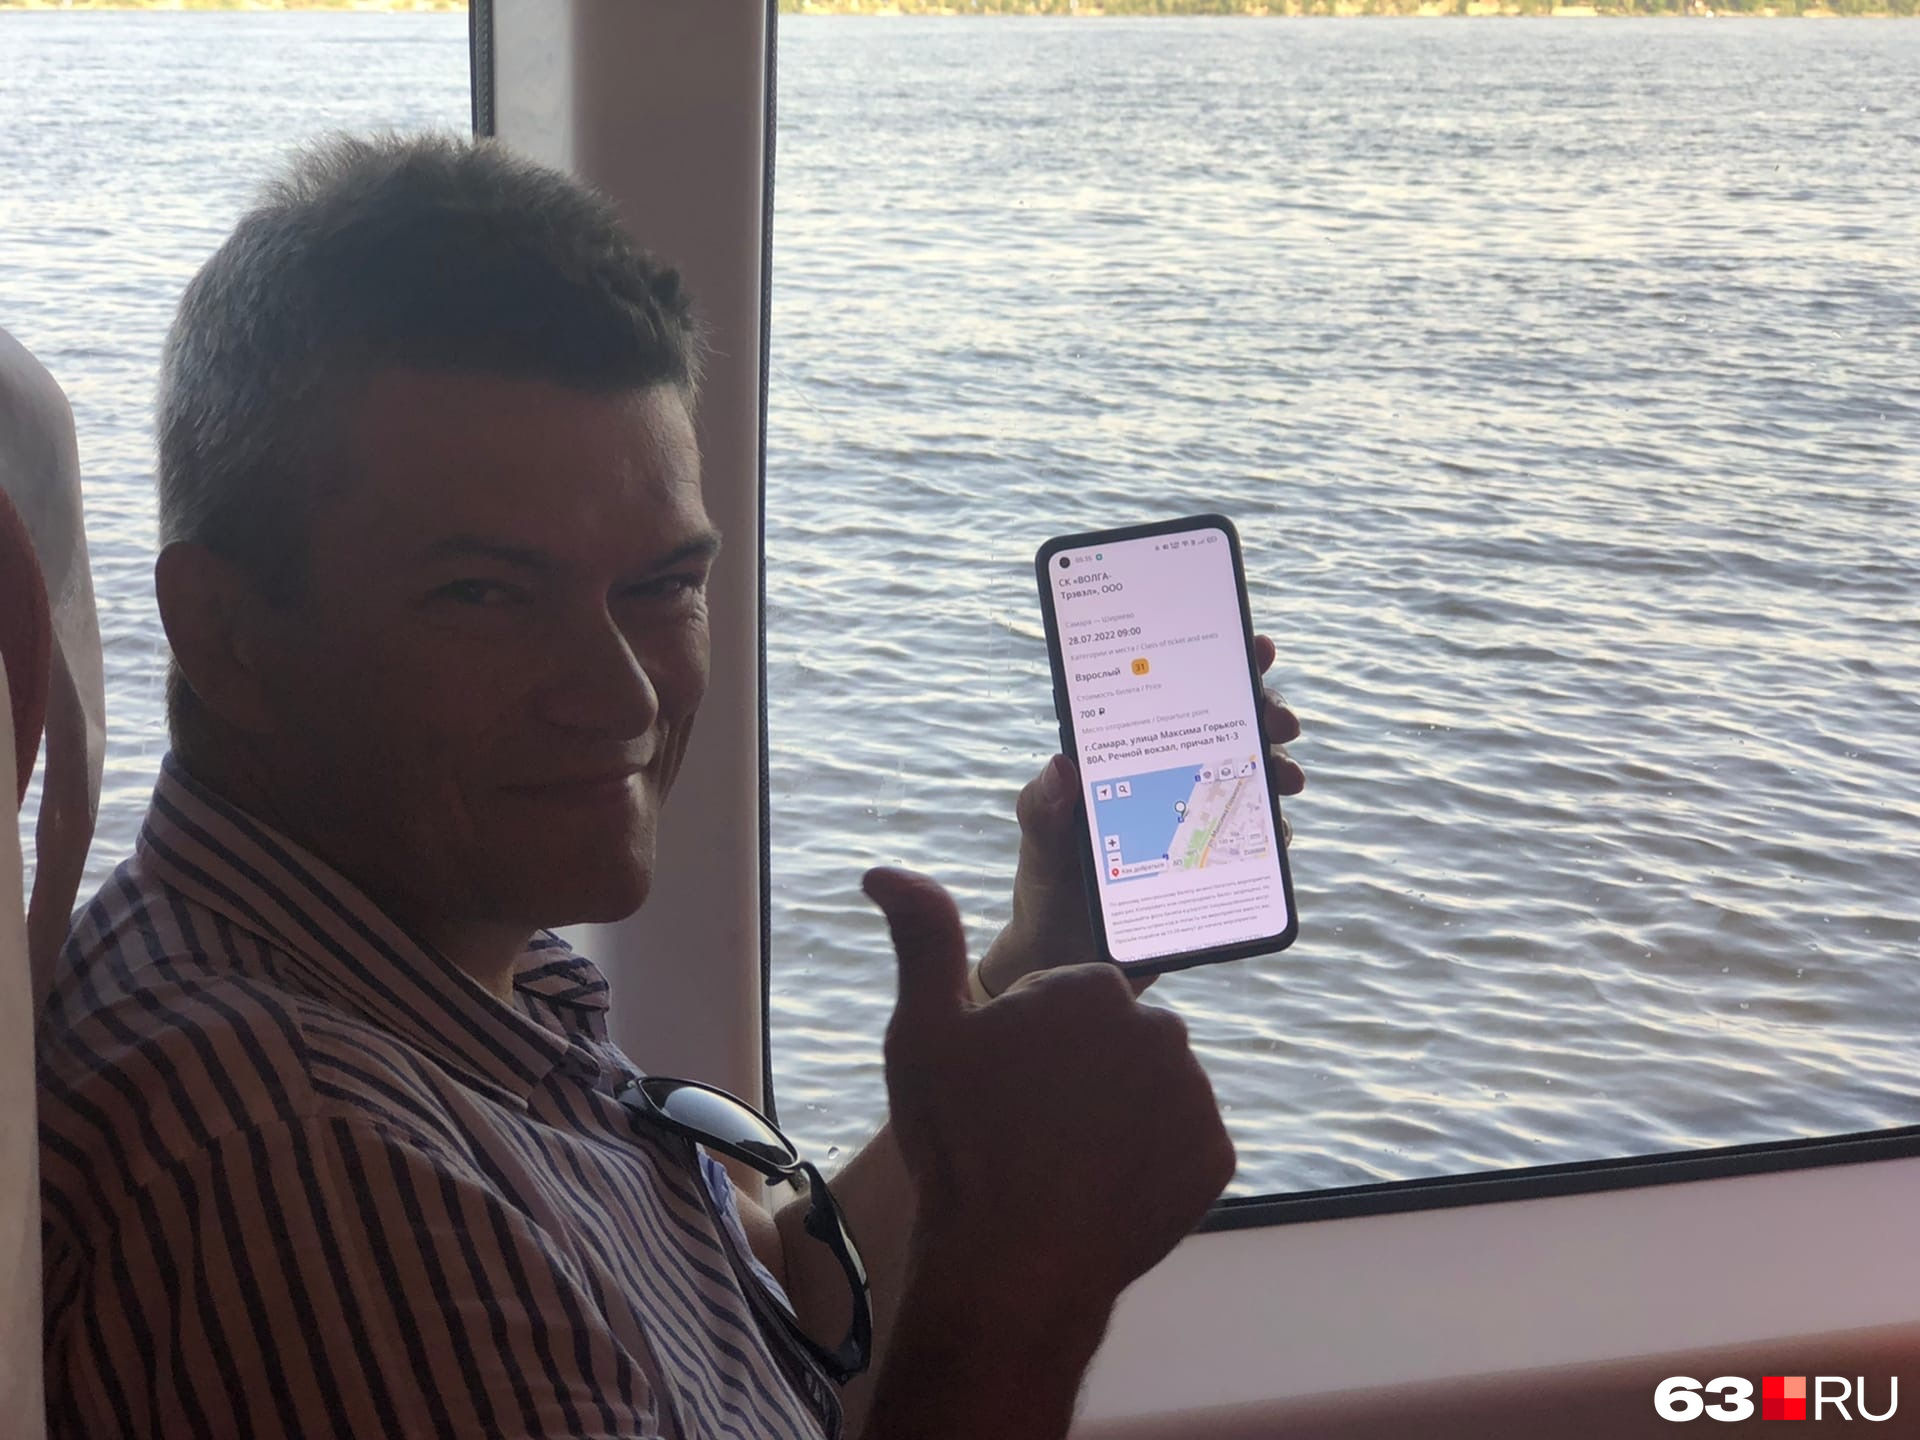 Сергей — блогер, но решил протестировать судно в независимом формате, поэтому билеты покупал сам, за полную стоимость